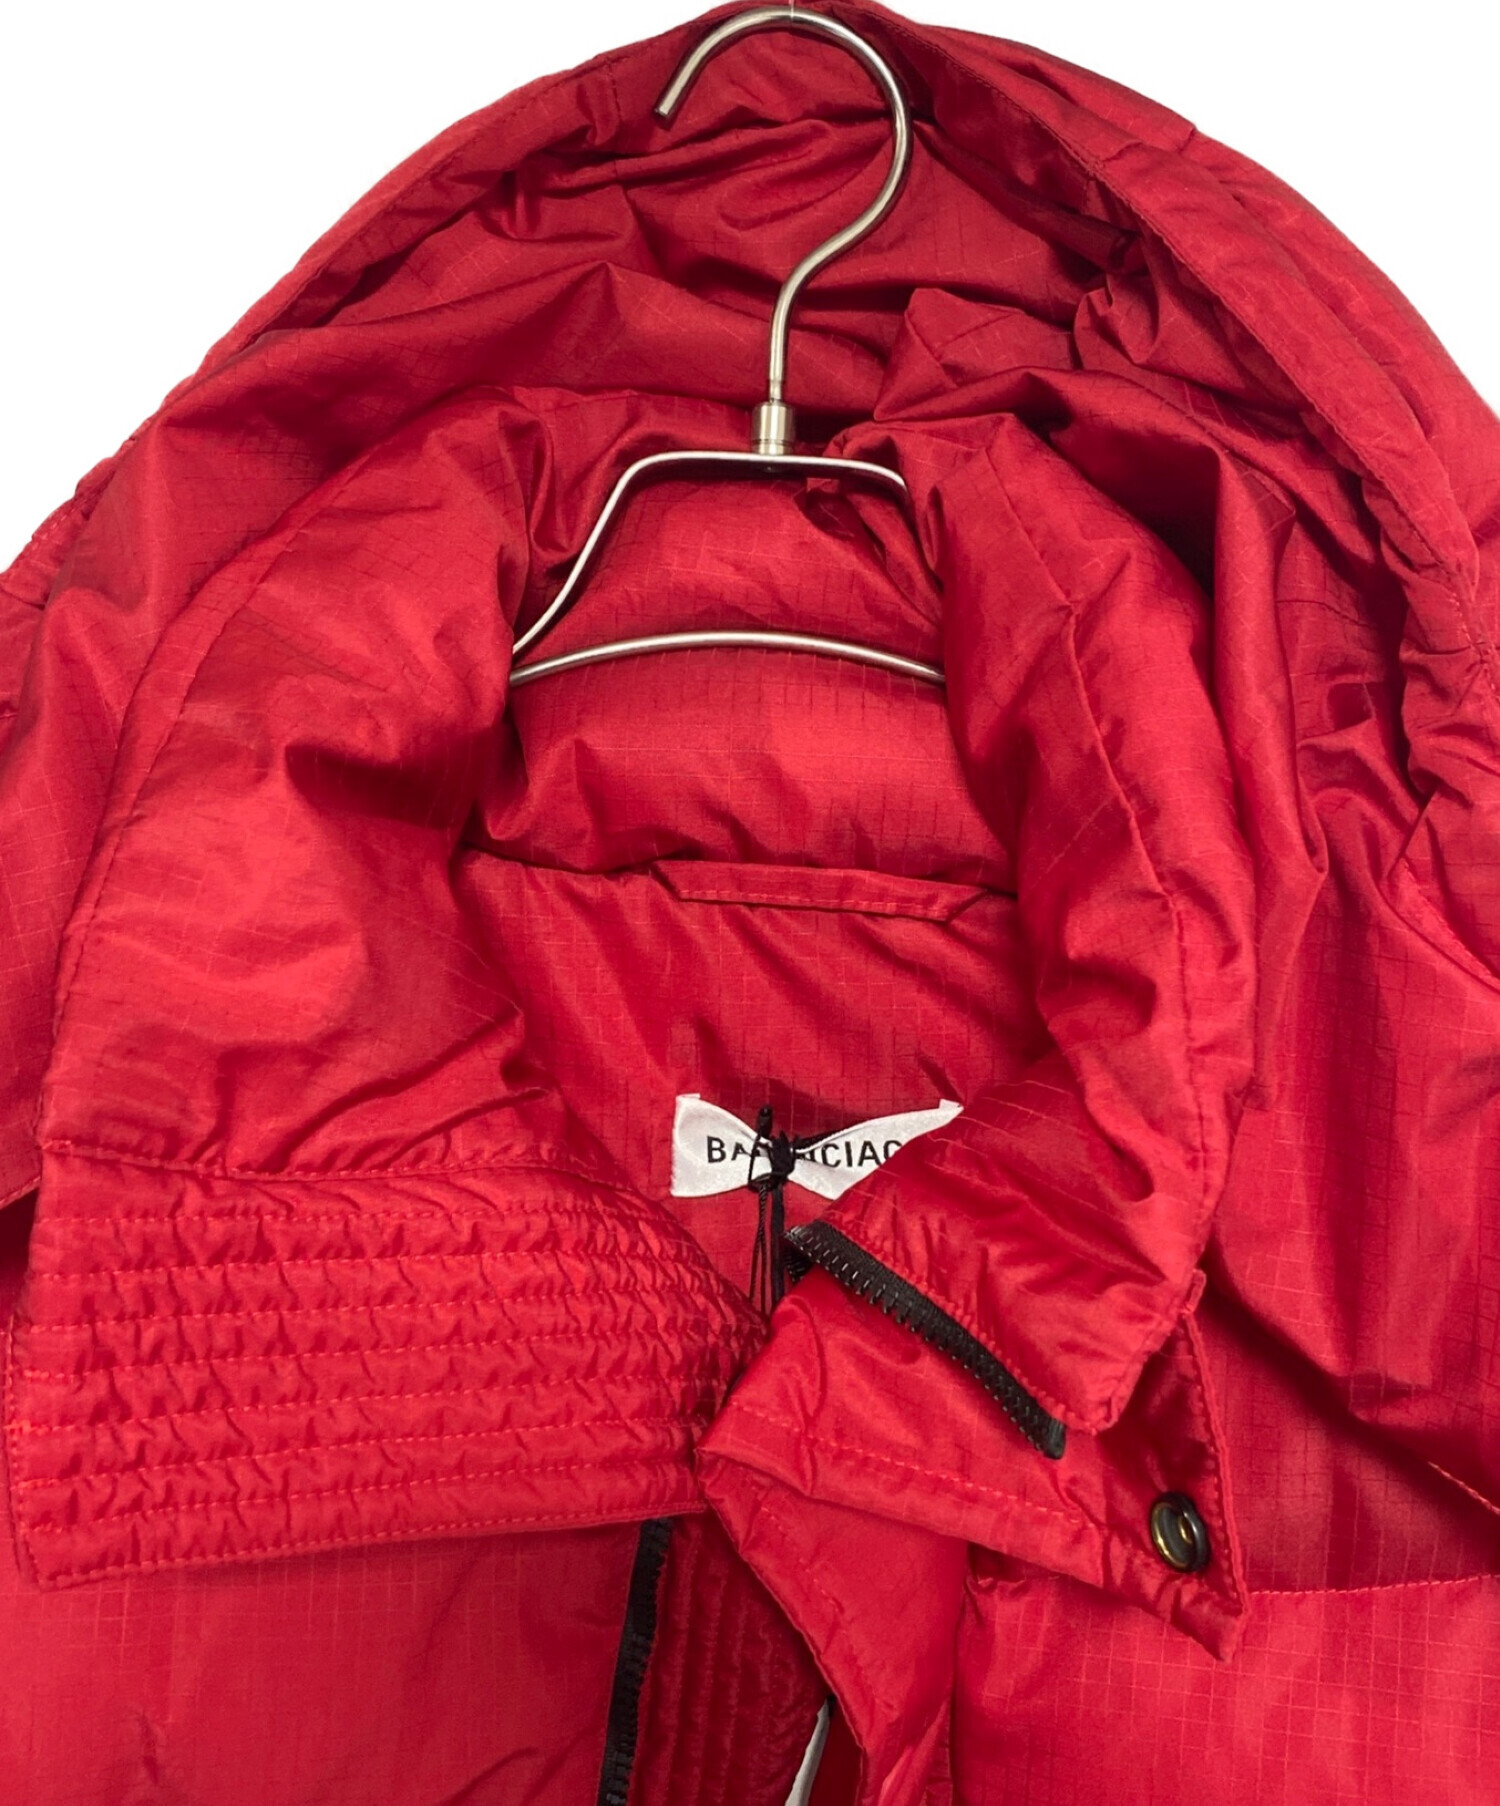 BALENCIAGA (バレンシアガ) New Swing puffer jacket レッド サイズ:SIZE 34 未使用品